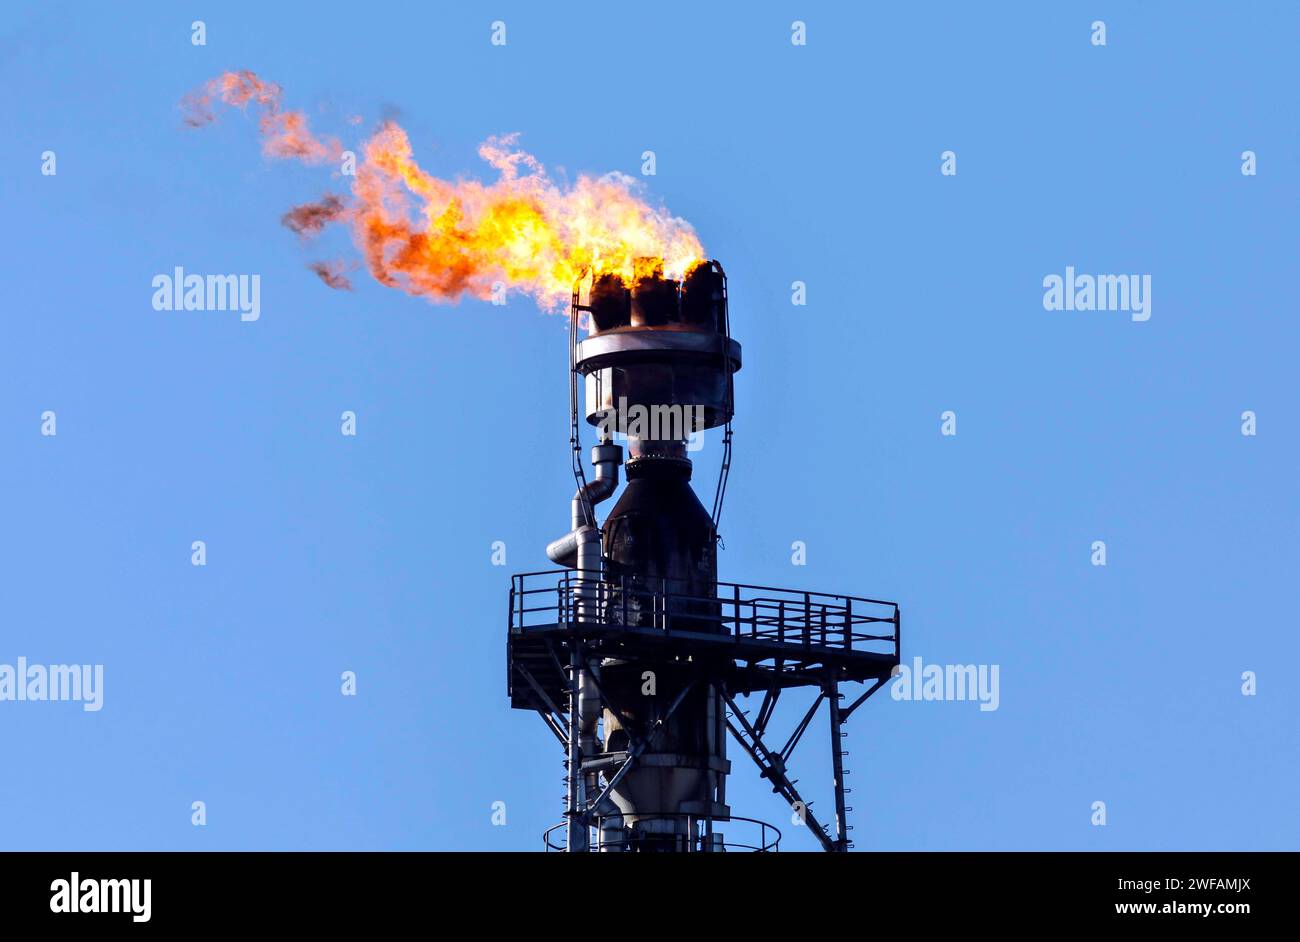 Le gaz excédentaire provenant du traitement du pétrole brut chez PCK-raffinerie GmbH à Schwedt est incinéré, 07/03/2022 Banque D'Images